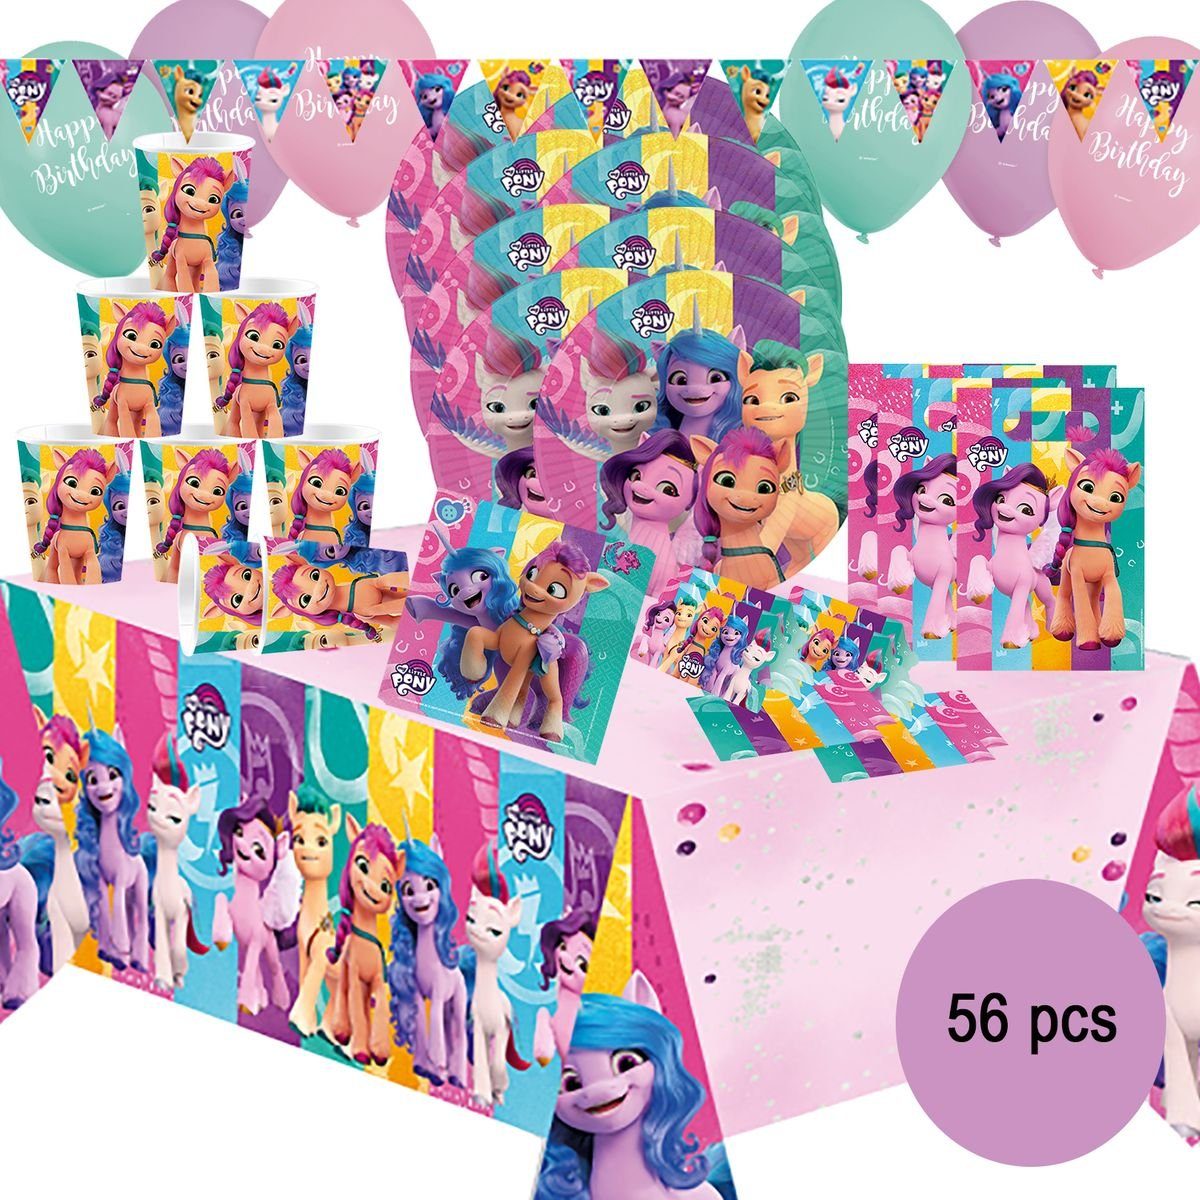 Amscan Papierdekoration XXL My Little Pony Party-Set